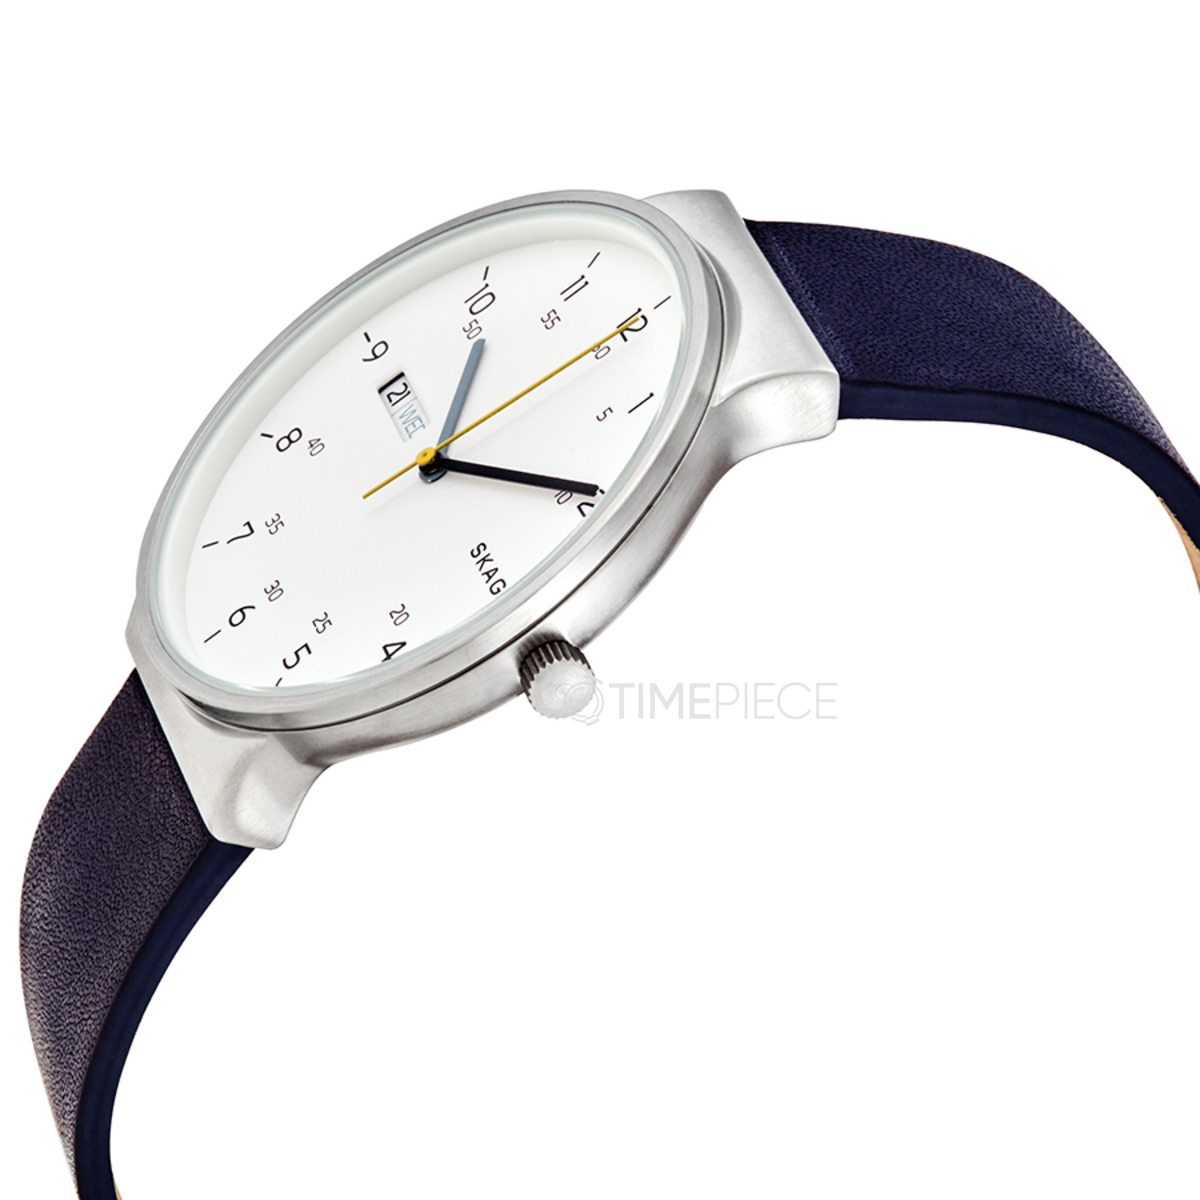 【Empfehlung】 Skagen SKW6455 Ancher Quartz Watch